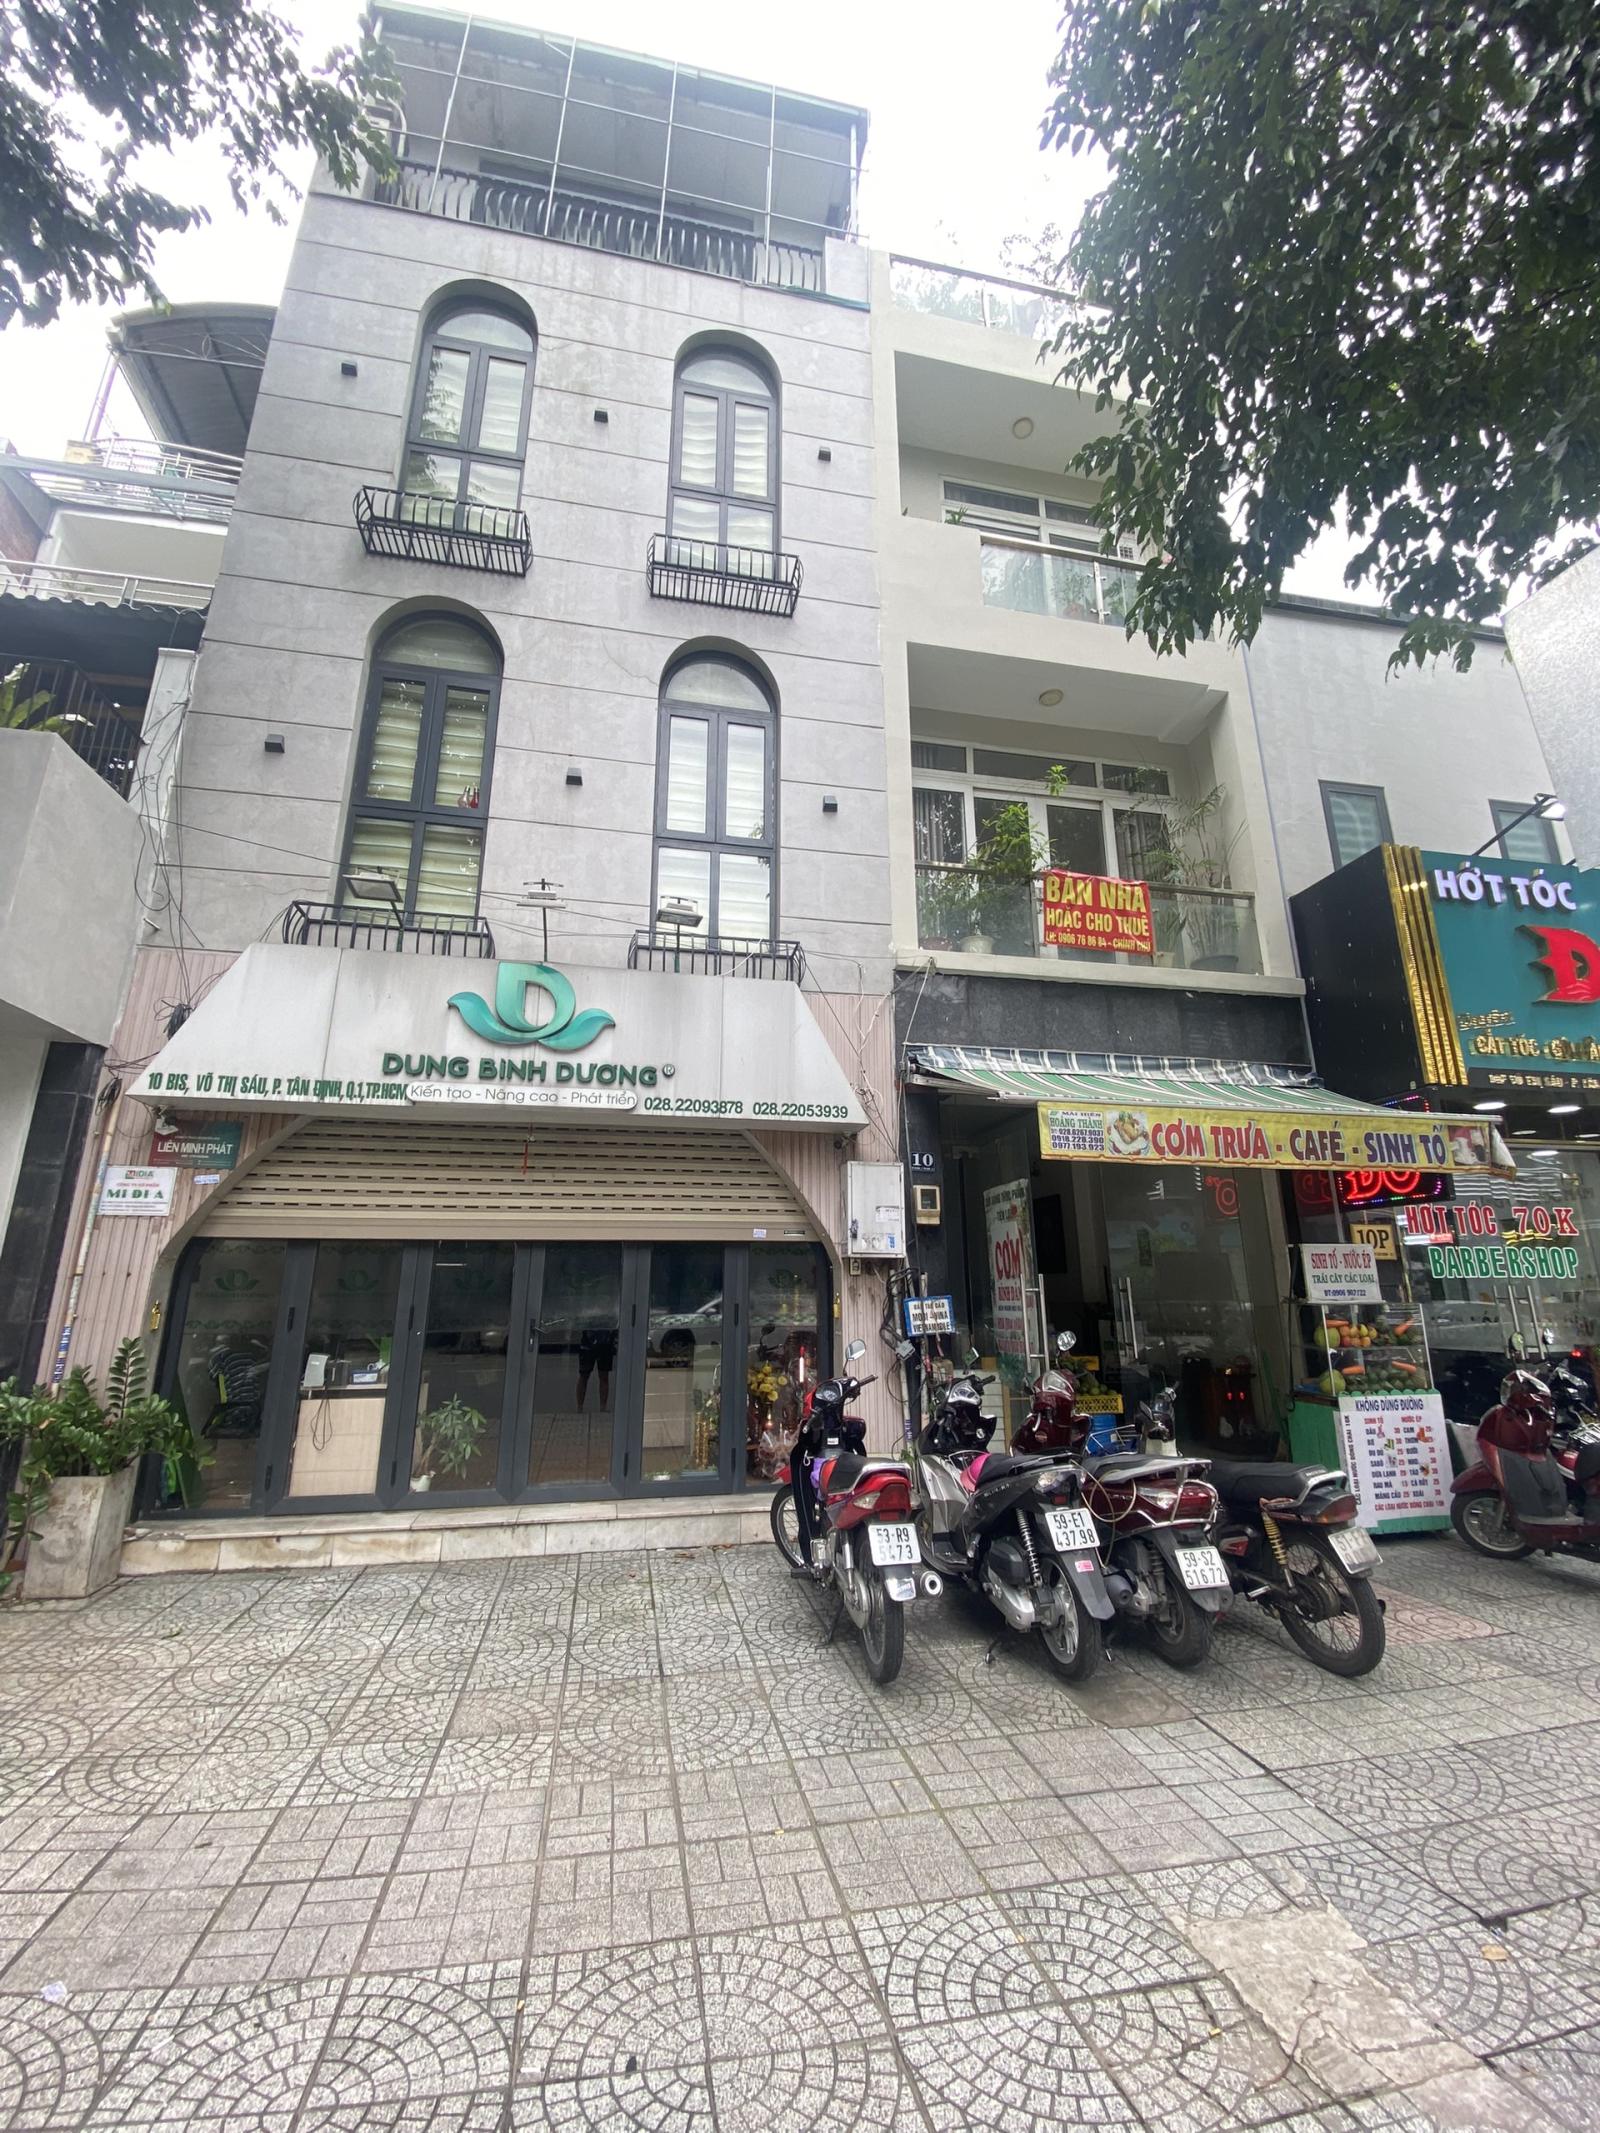 BÁN NHÀ MẶT TIỀN Đường Võ Thị Sáu, P. Tân Định, Quận 1.LHCC:0919 79 9090